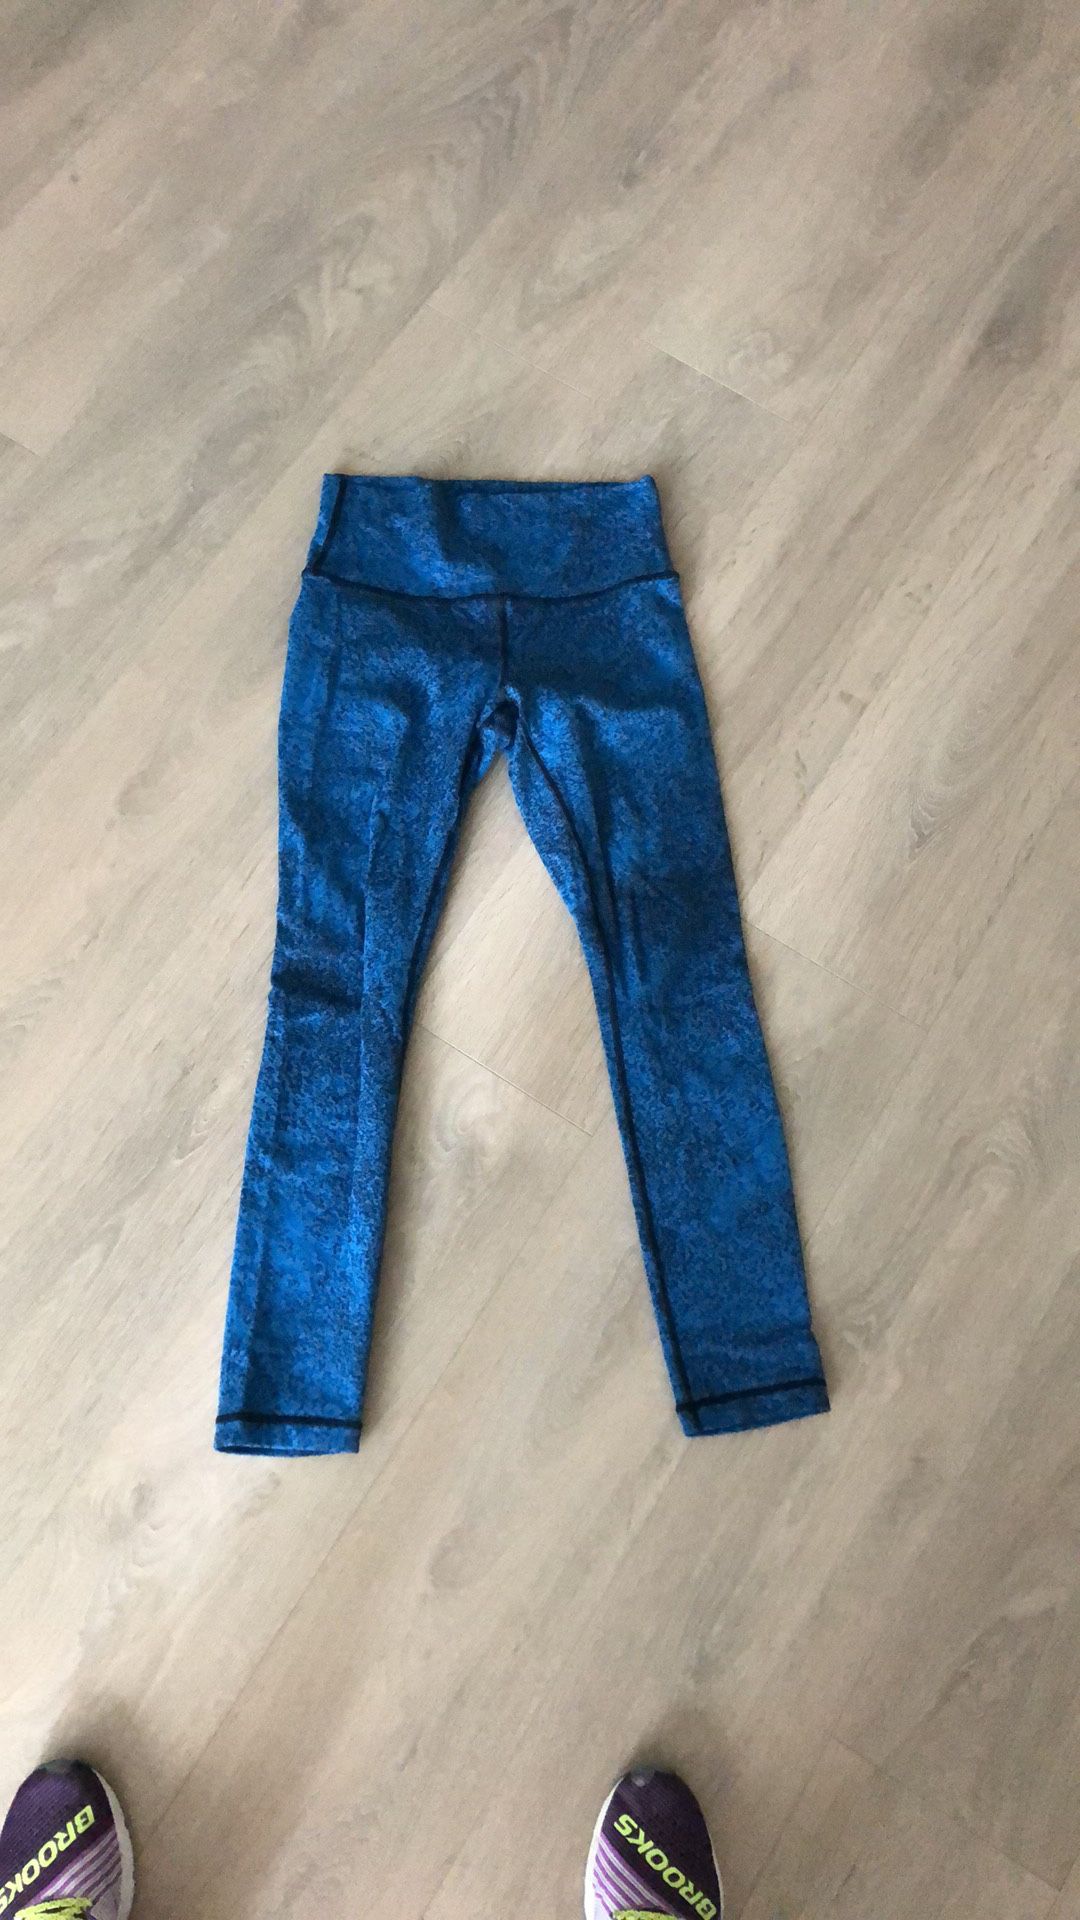 Lululemon blue/black leggings